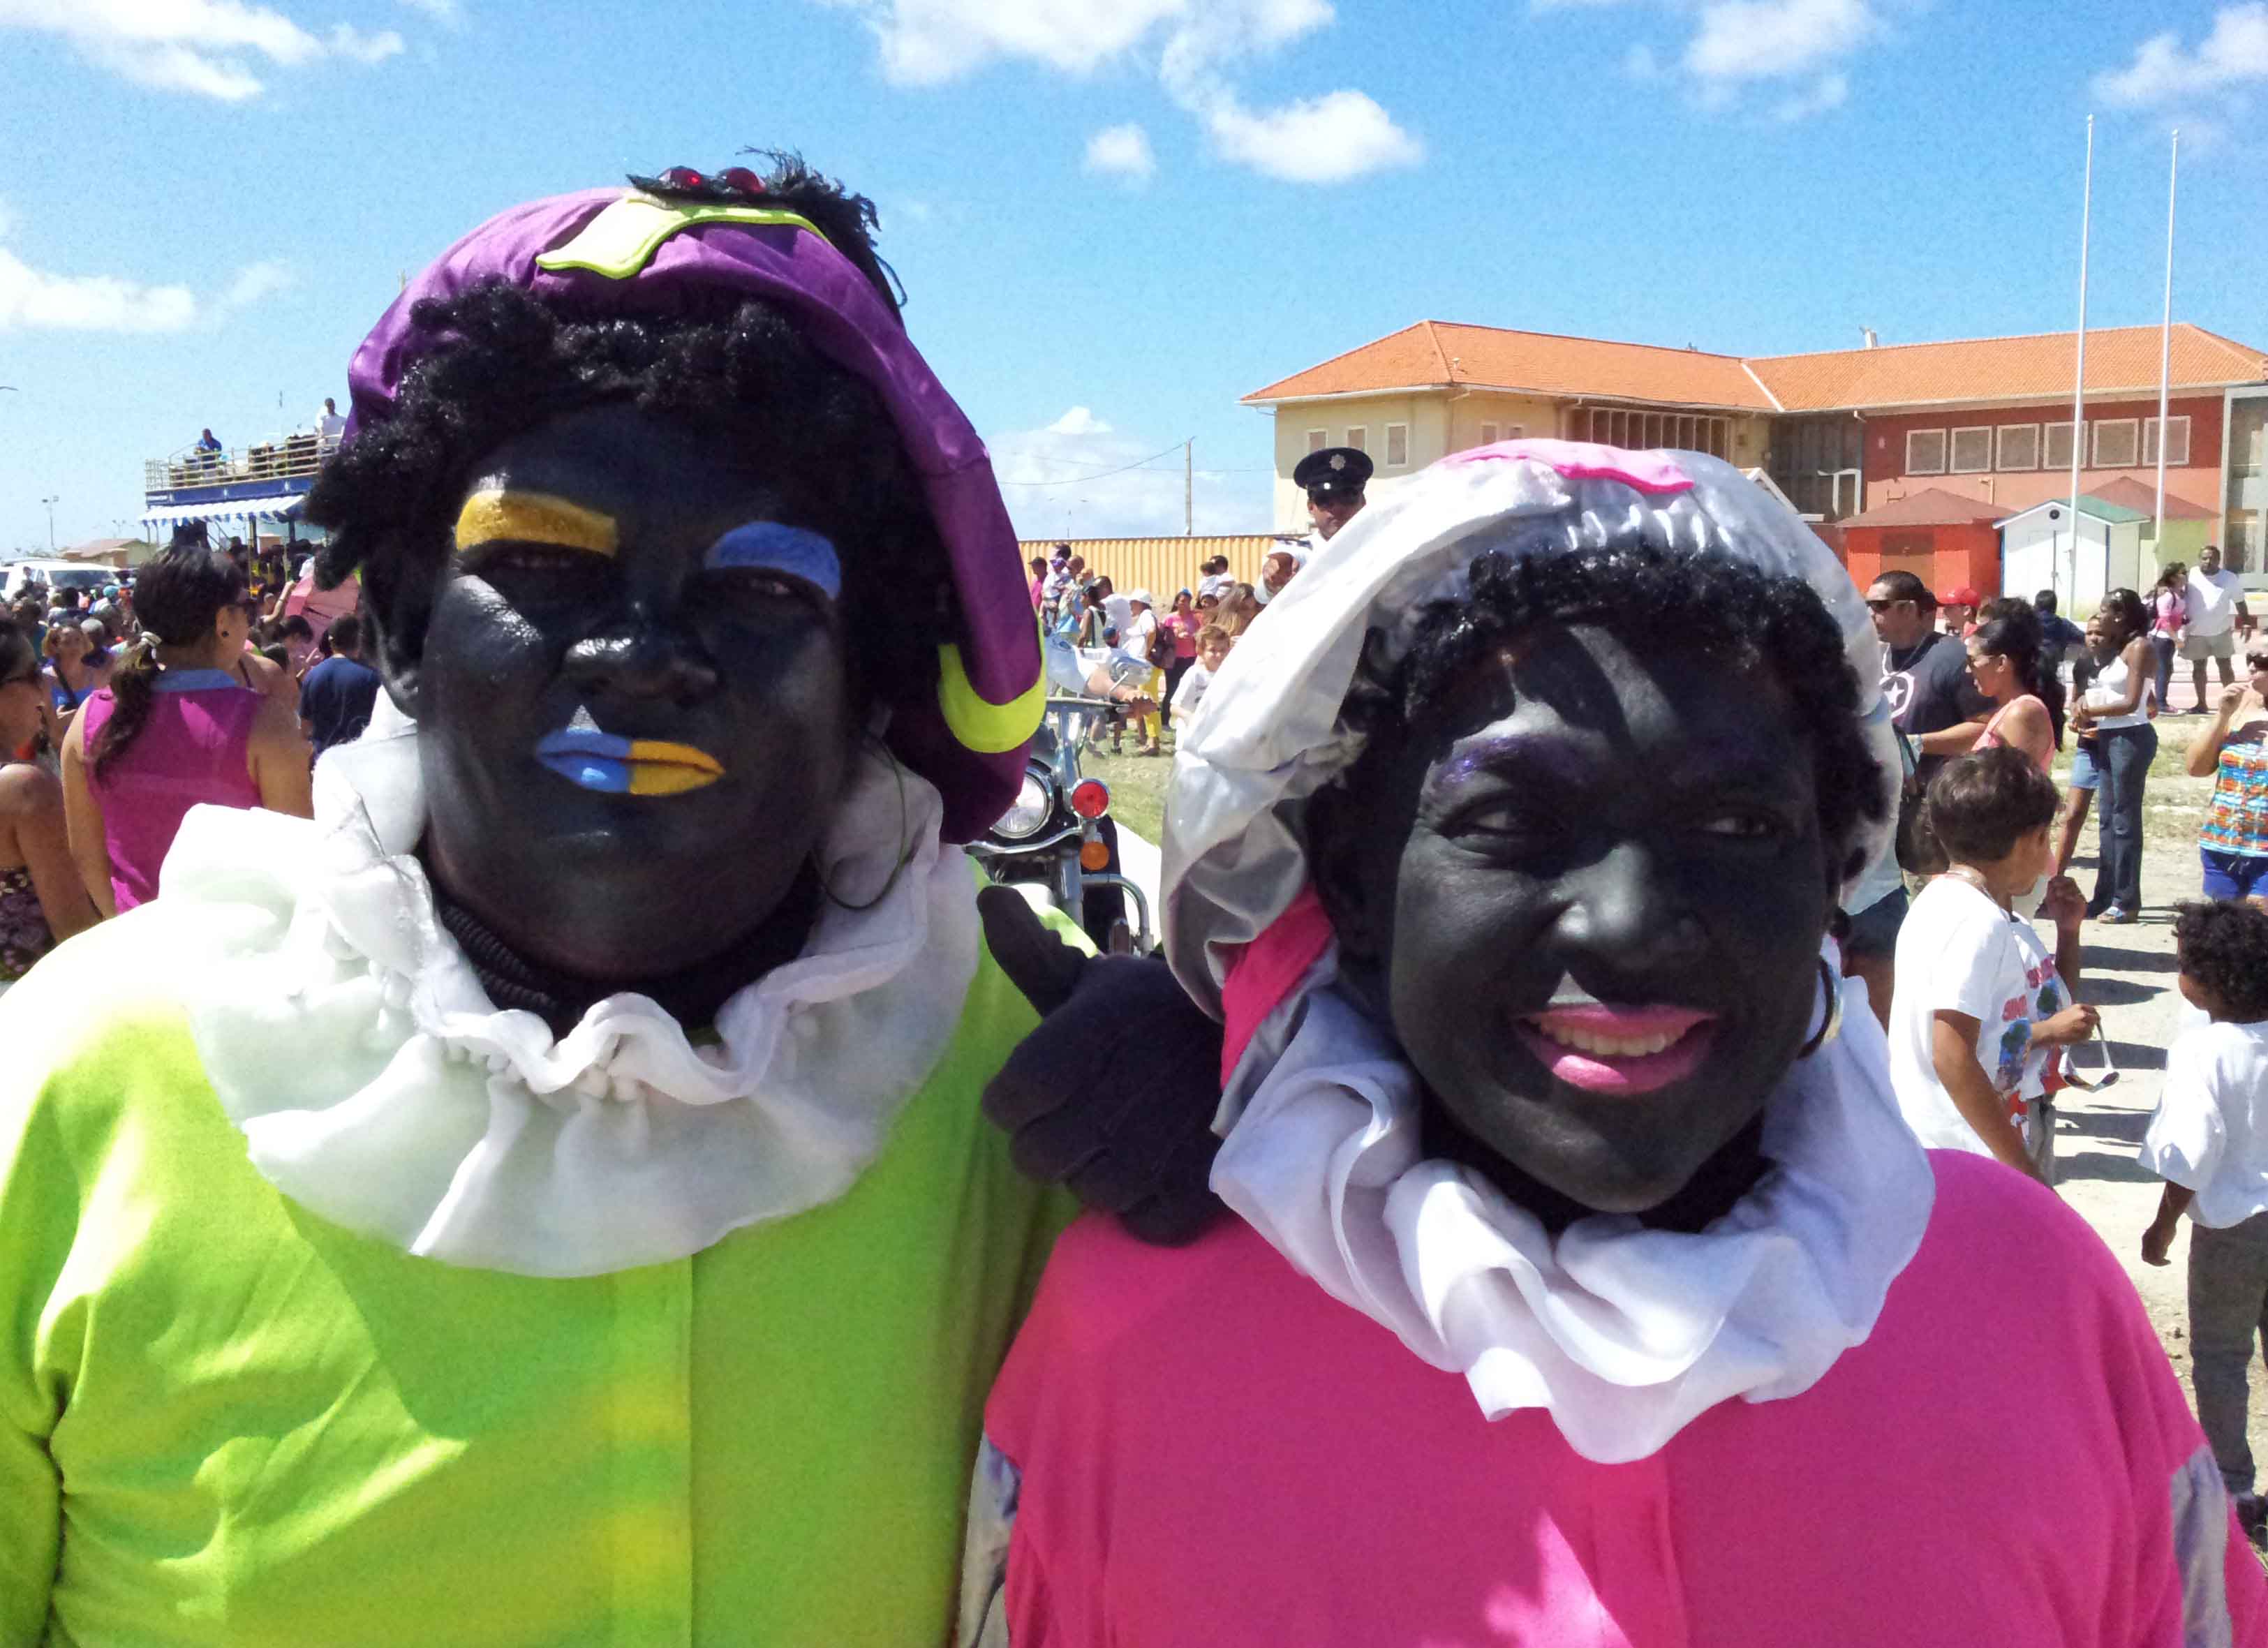 Kleverig Op grote schaal domein Aruba houdt vast aan klassieke Zwarte Piet | Caribisch Netwerk